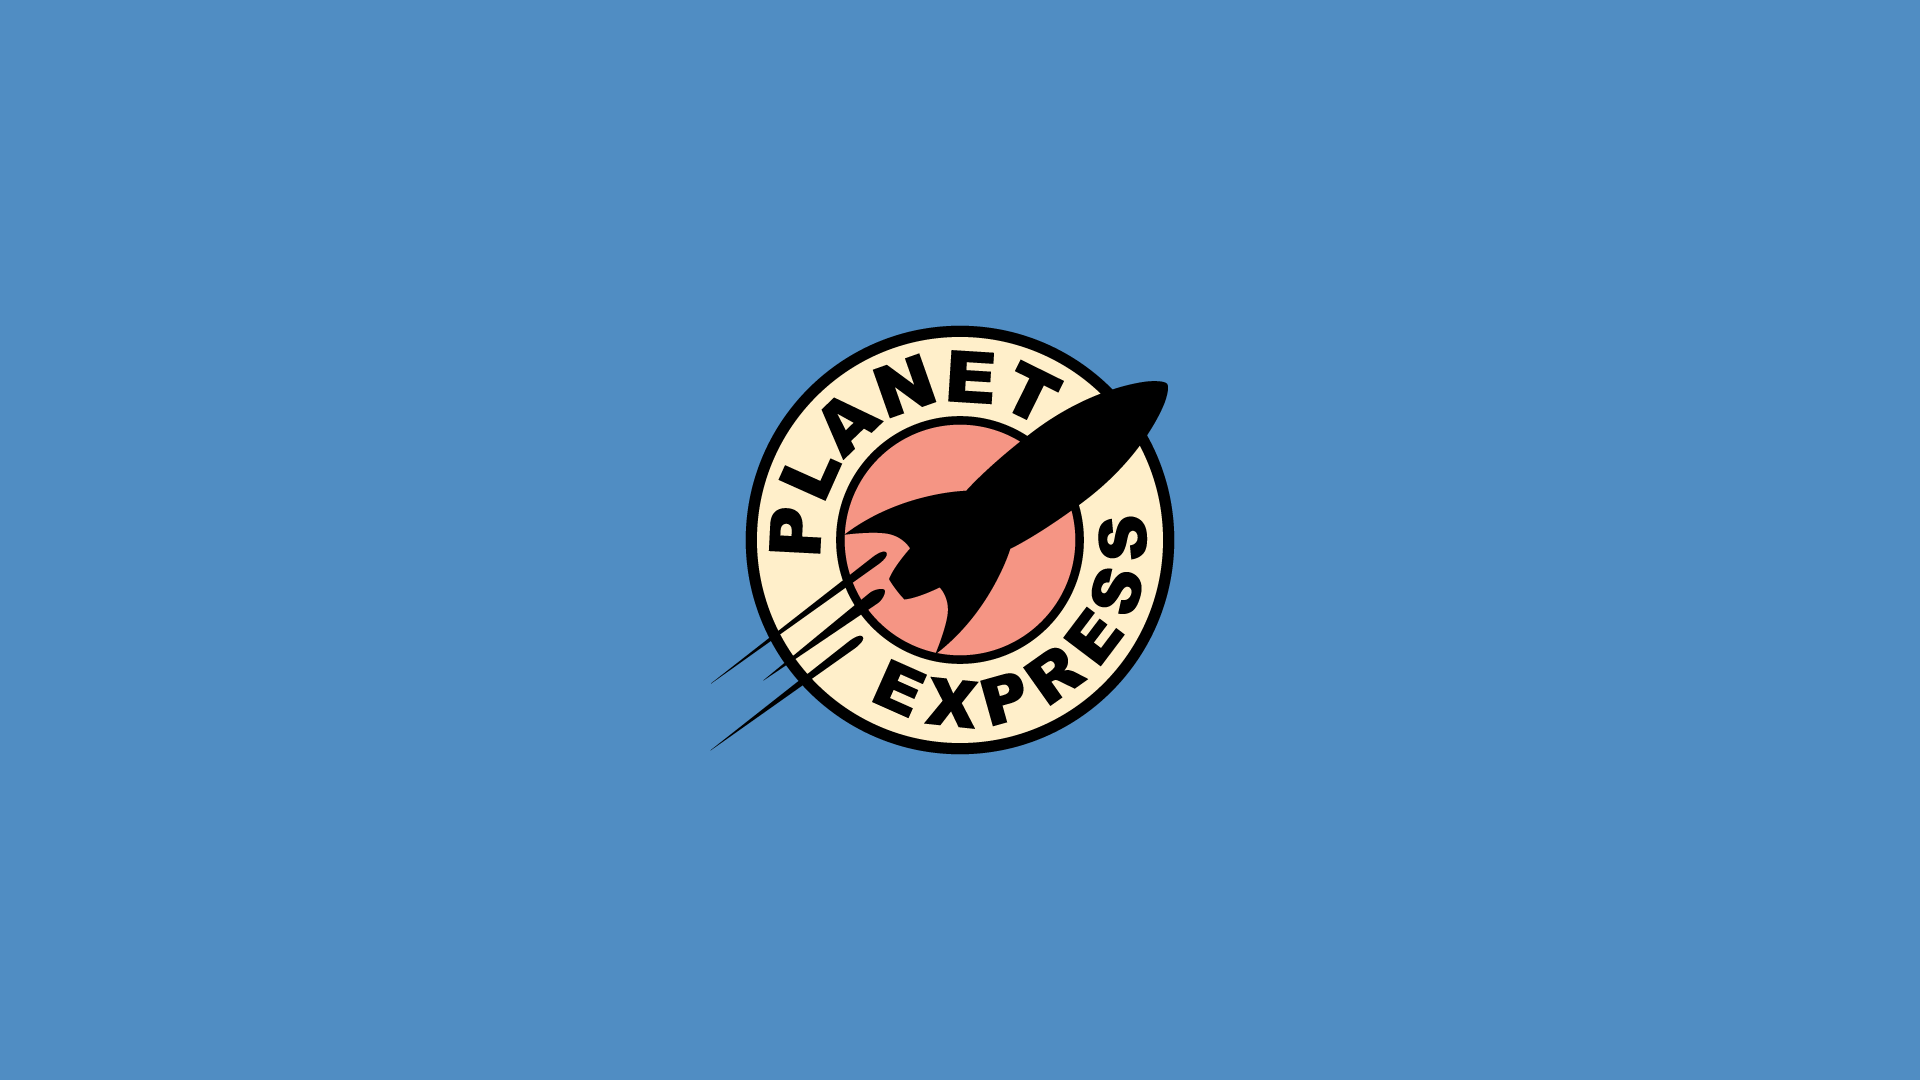 planet express wallpaper,logo,blue,font,illustration,emblem